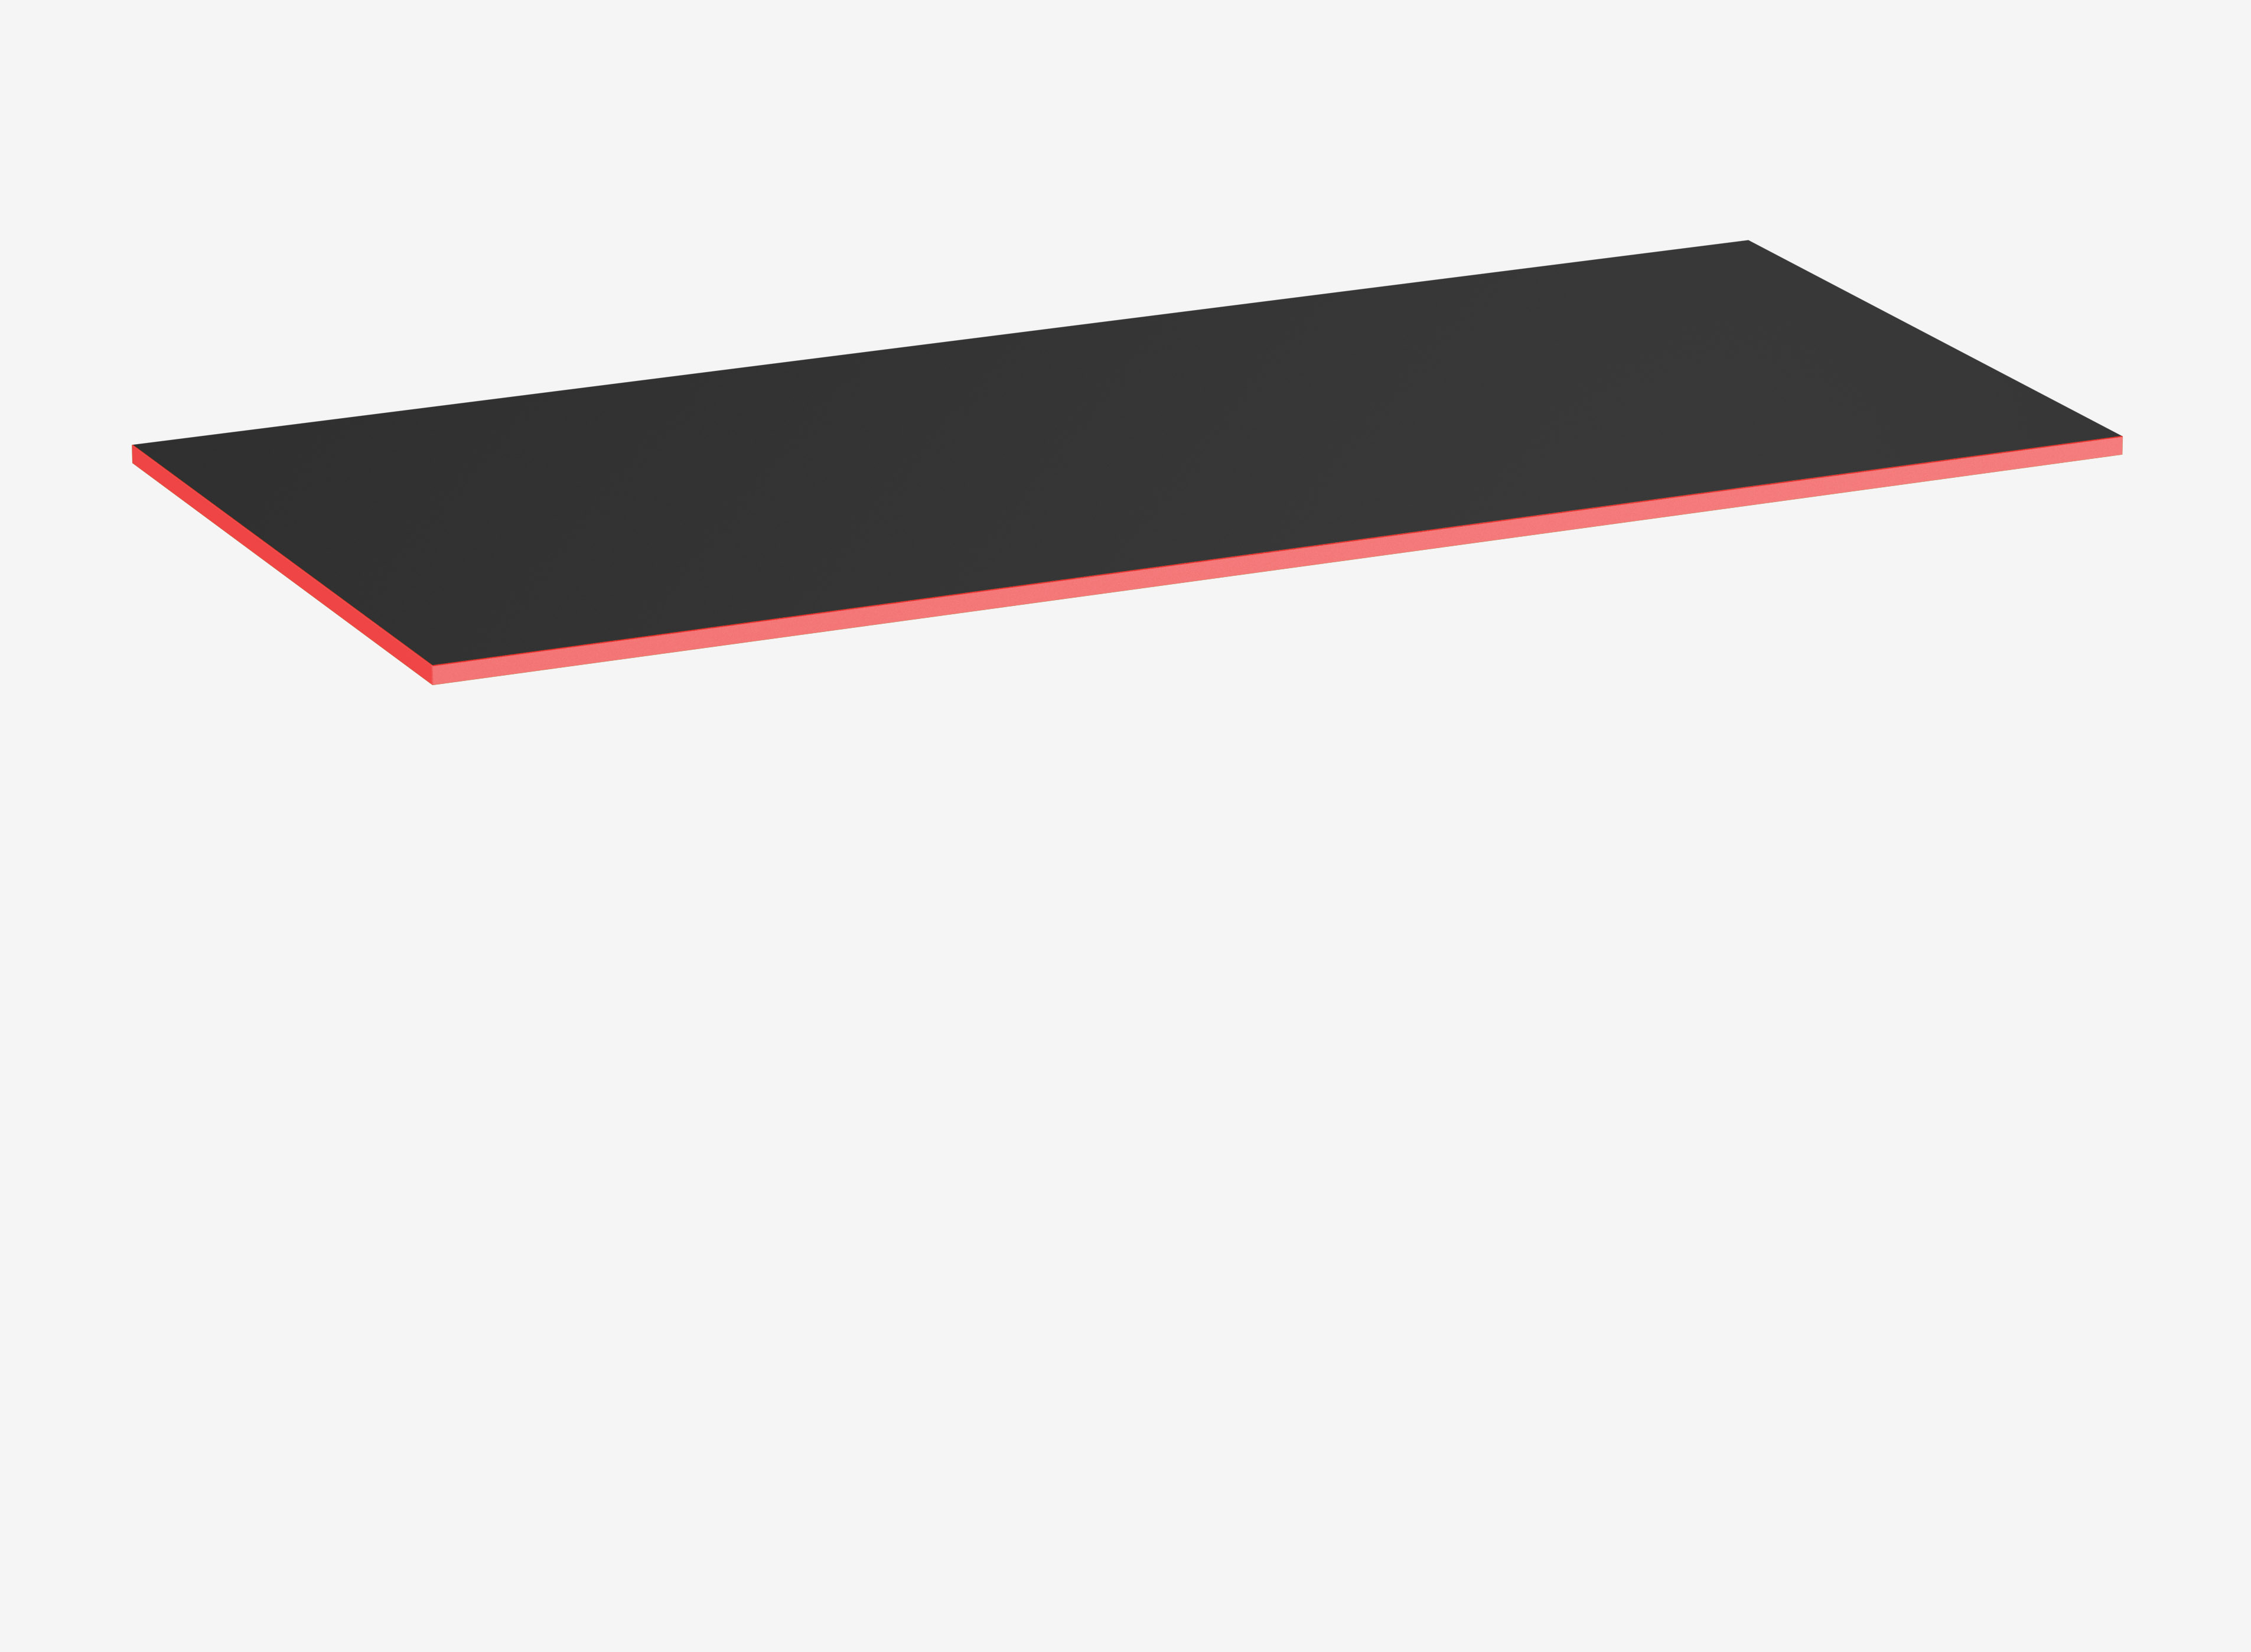 Gamingtischplatte Rechteck, Schwarz, Klassik, 1800 x 800 x 19 mm, Kante Fire Red